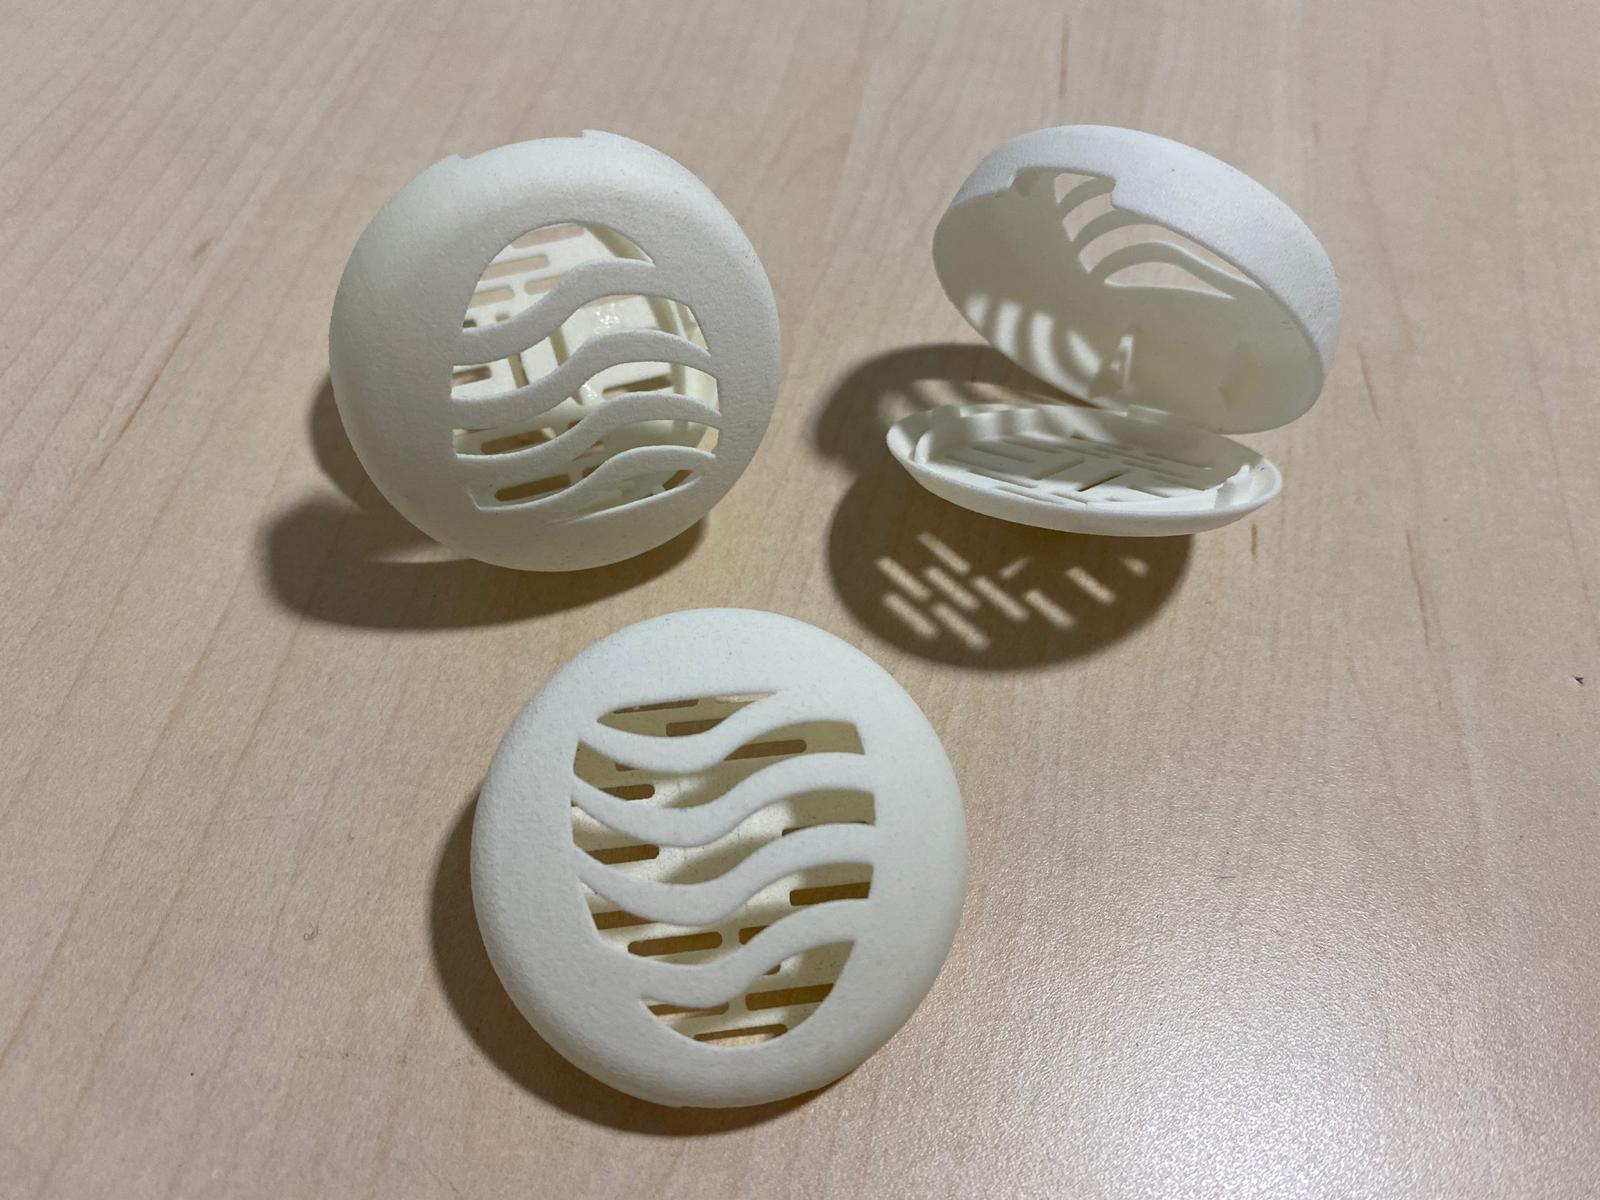 Impresión 3D y Fabricación aditiva